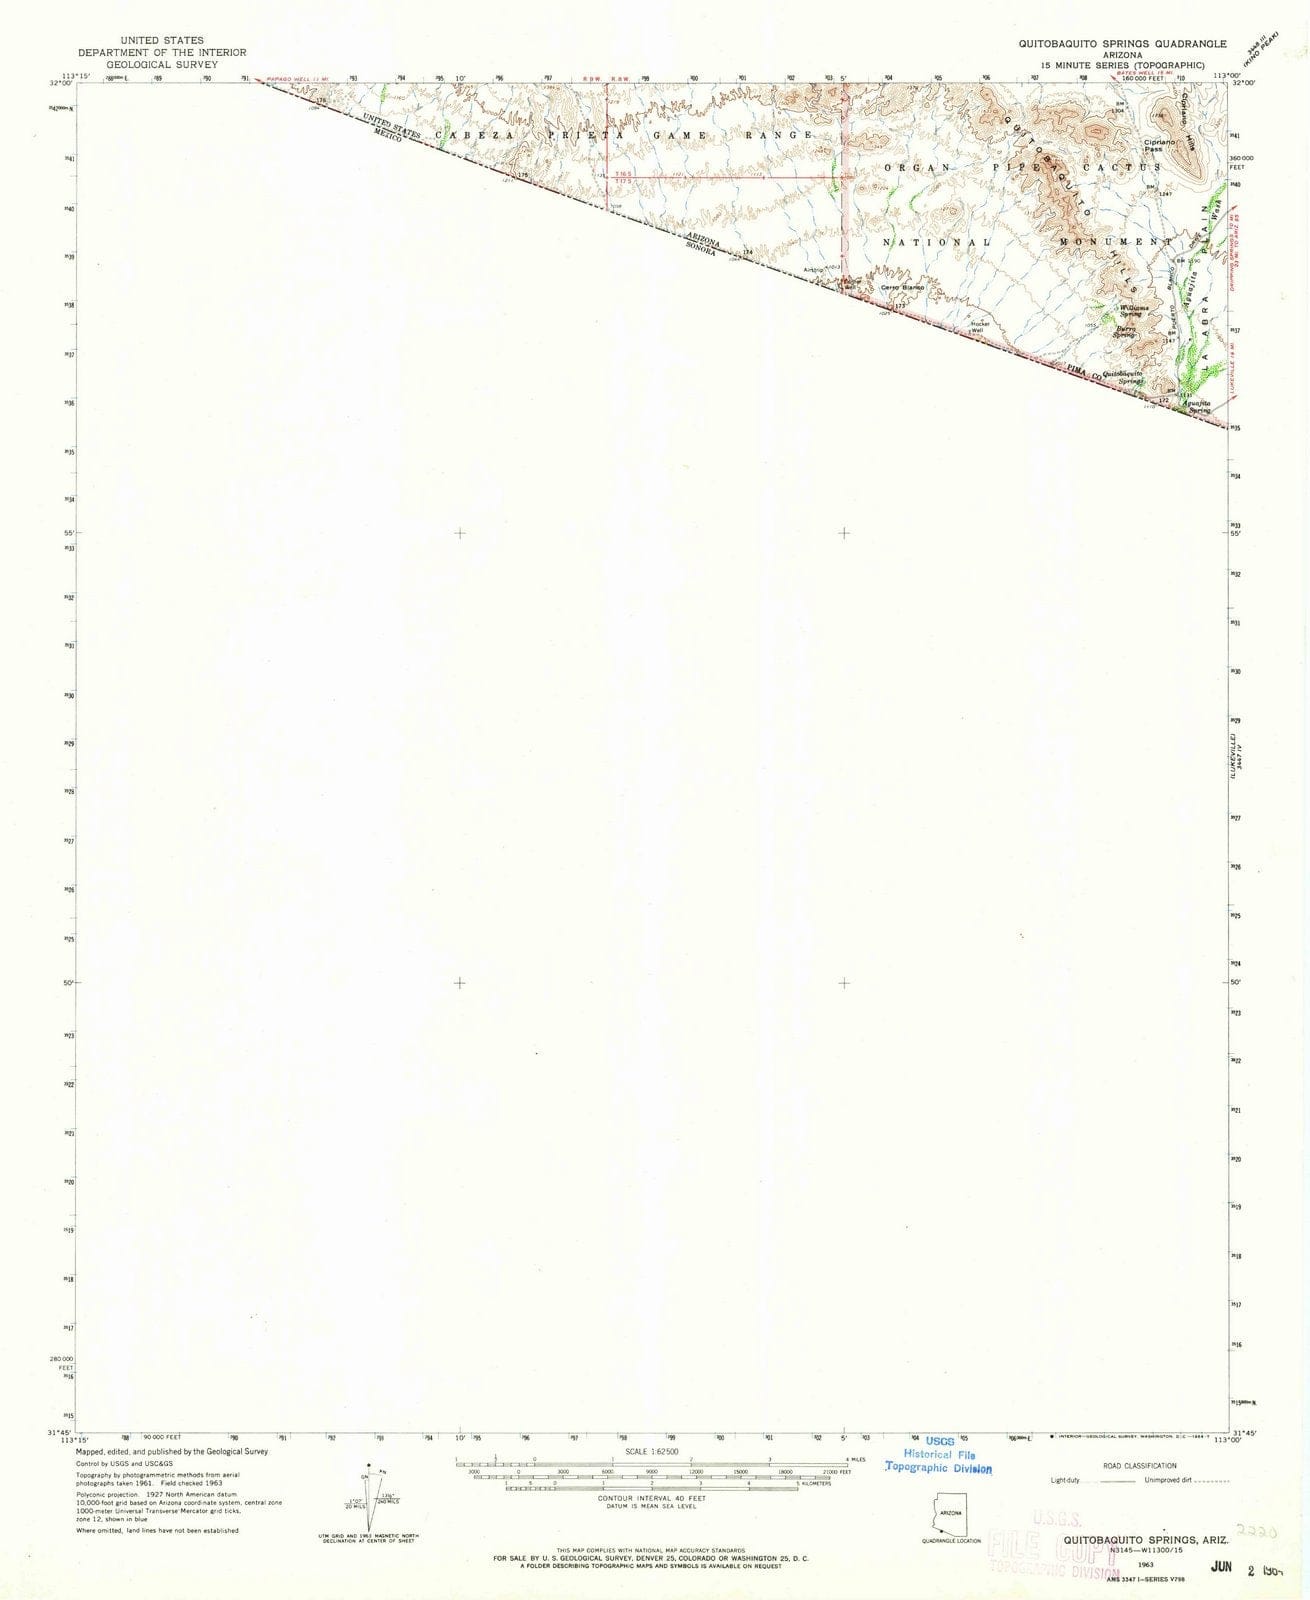 1963 Quitobaquito Springs, AZ - Arizona - USGS Topographic Map